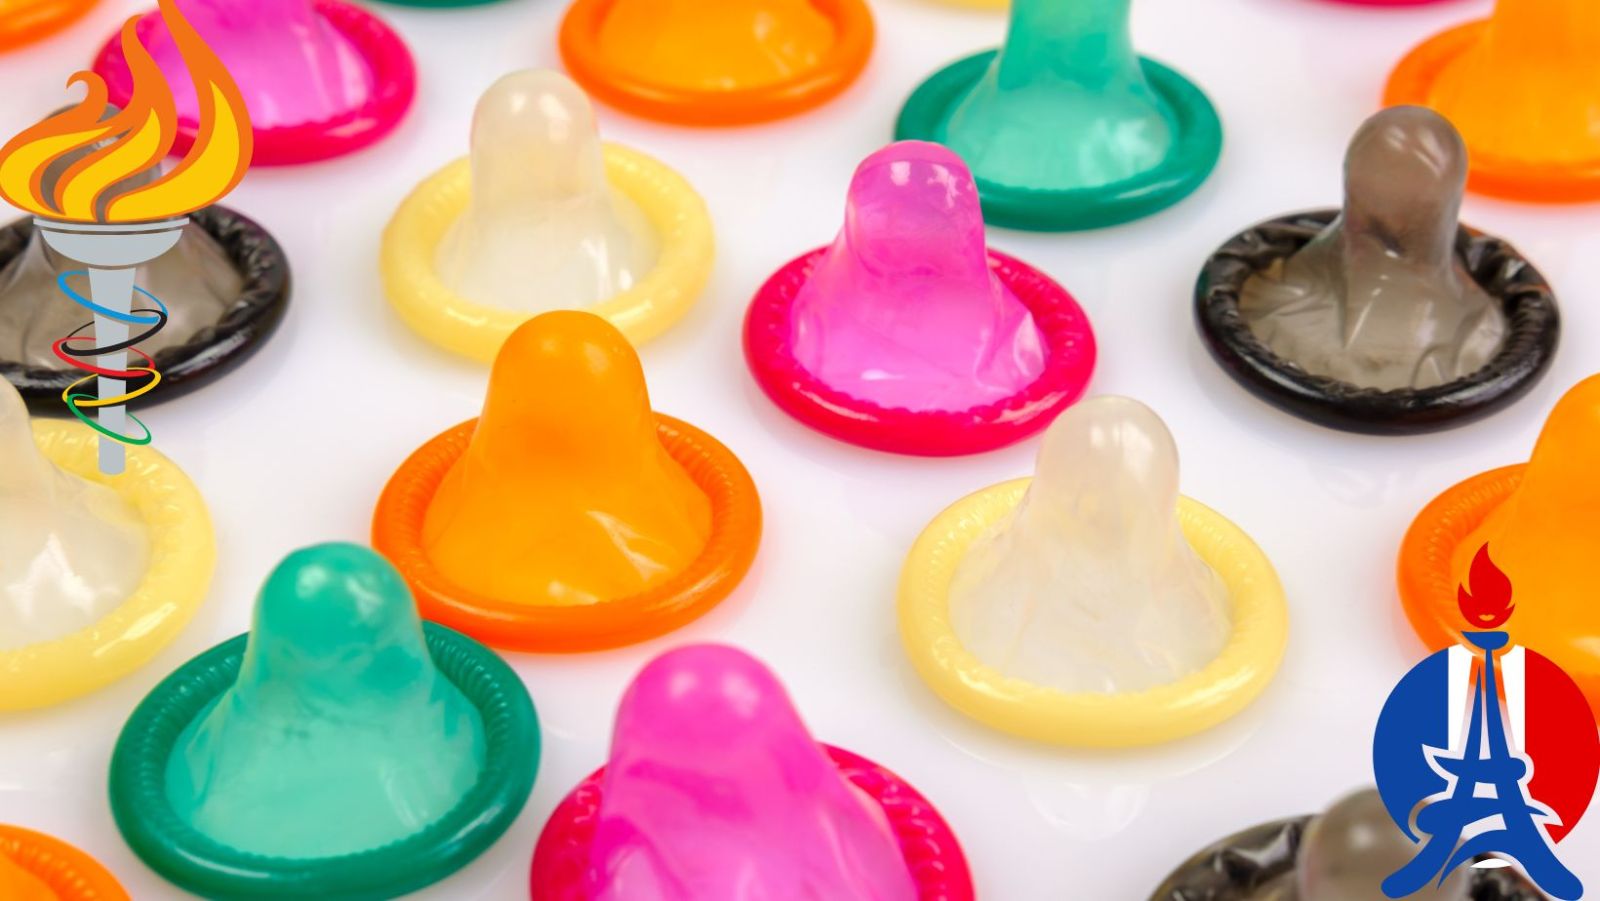 Les JO de Paris 2024 seront torrides : 300 000 préservatifs pour les athlètes, 2 capotes par jour !